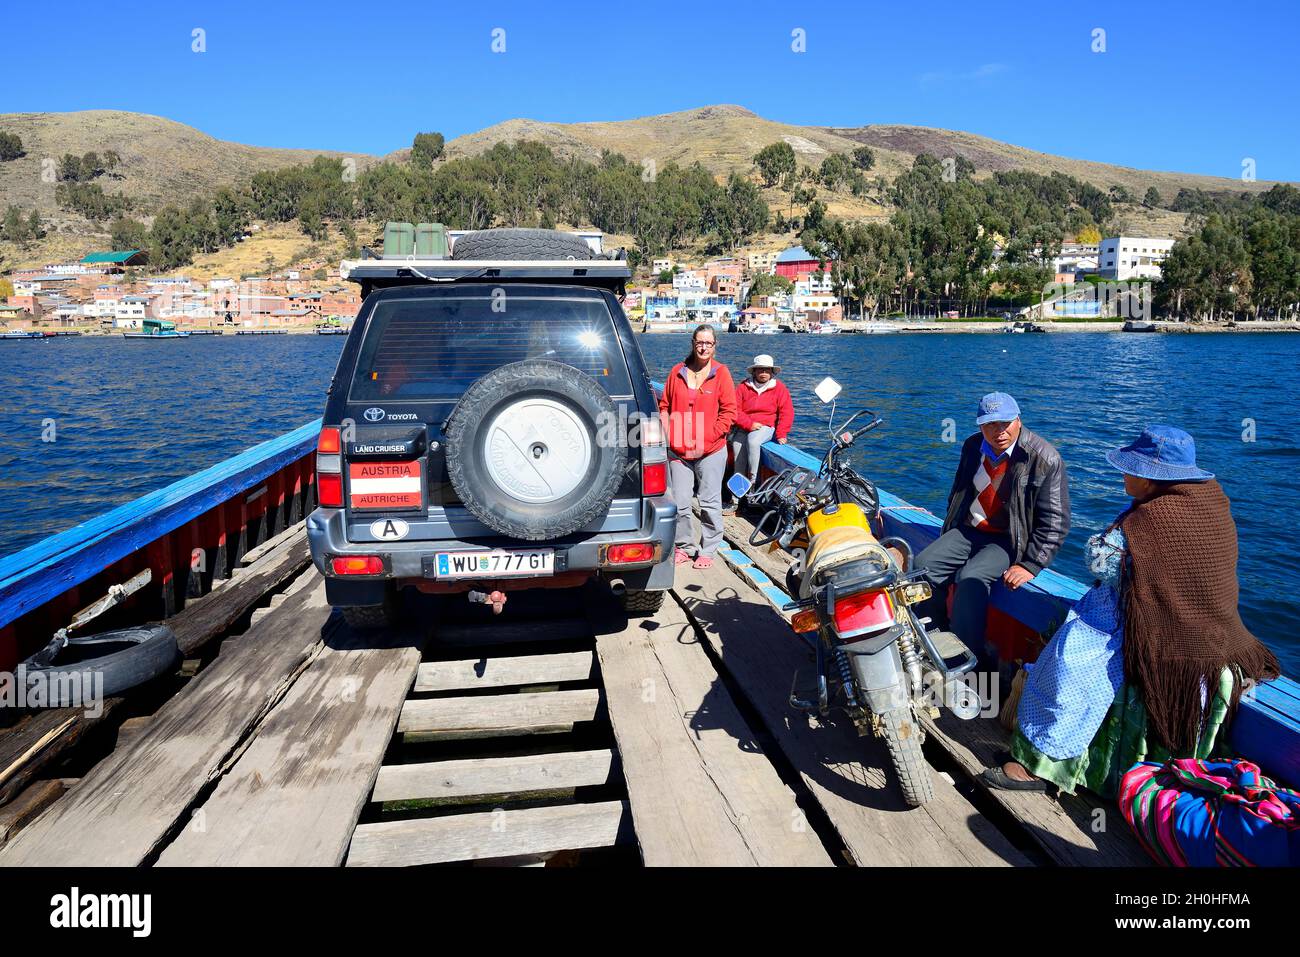 Véhicule tout-terrain autrichien sur un simple ferry traversant le détroit de Tiquina, Estrecho de Tiquina, San Pablo de Tiquina, lac Titicaca, département Banque D'Images